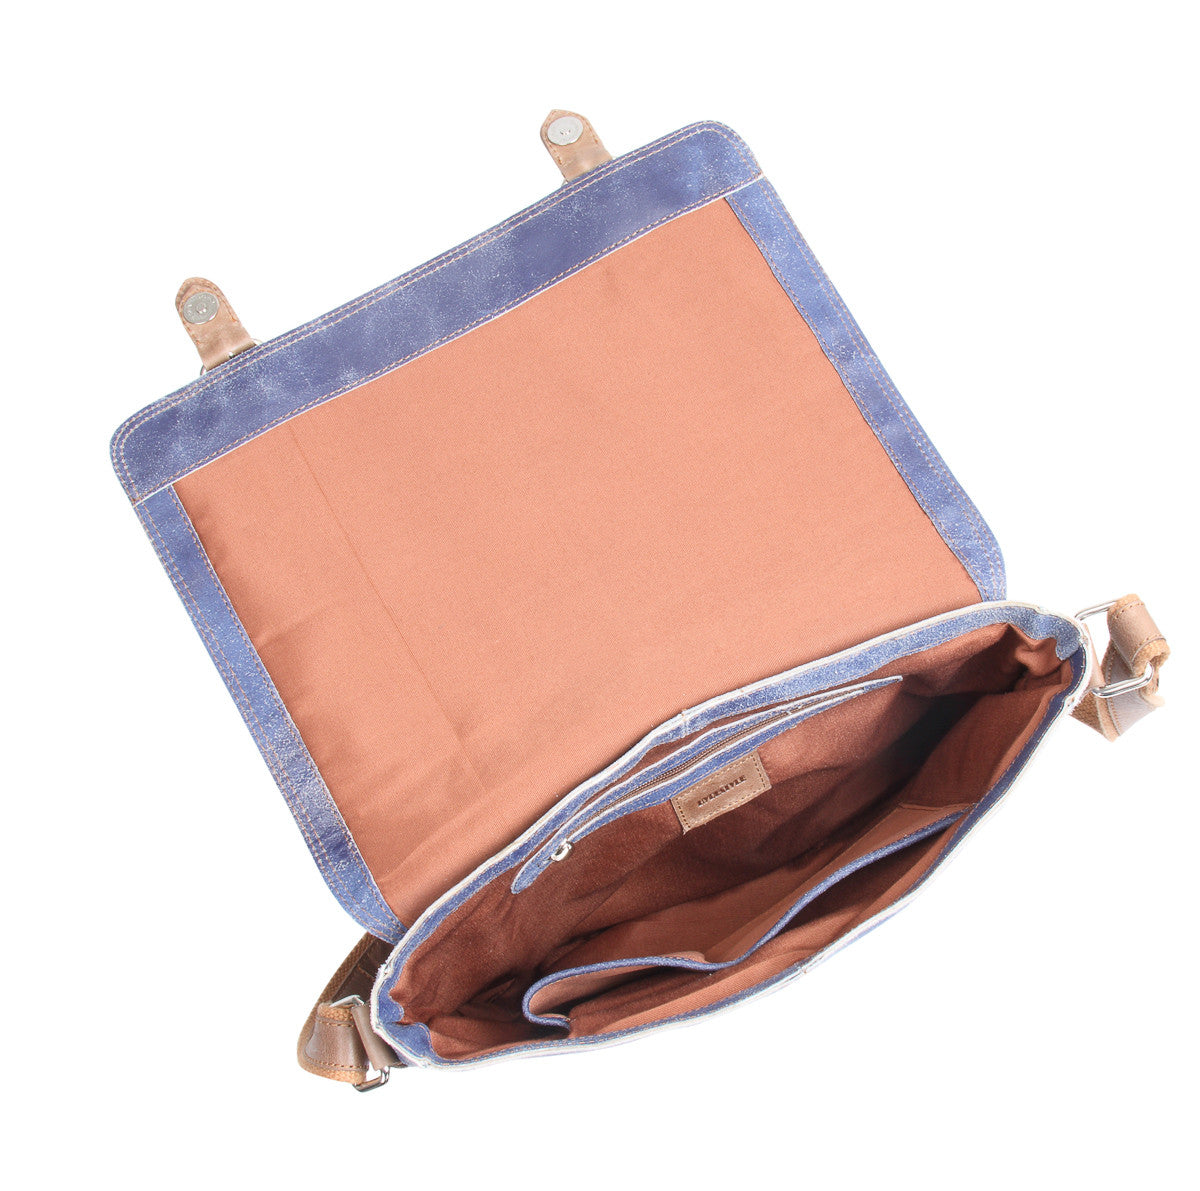 Crackle genuine leather a4 satchel messenger bag #UM44